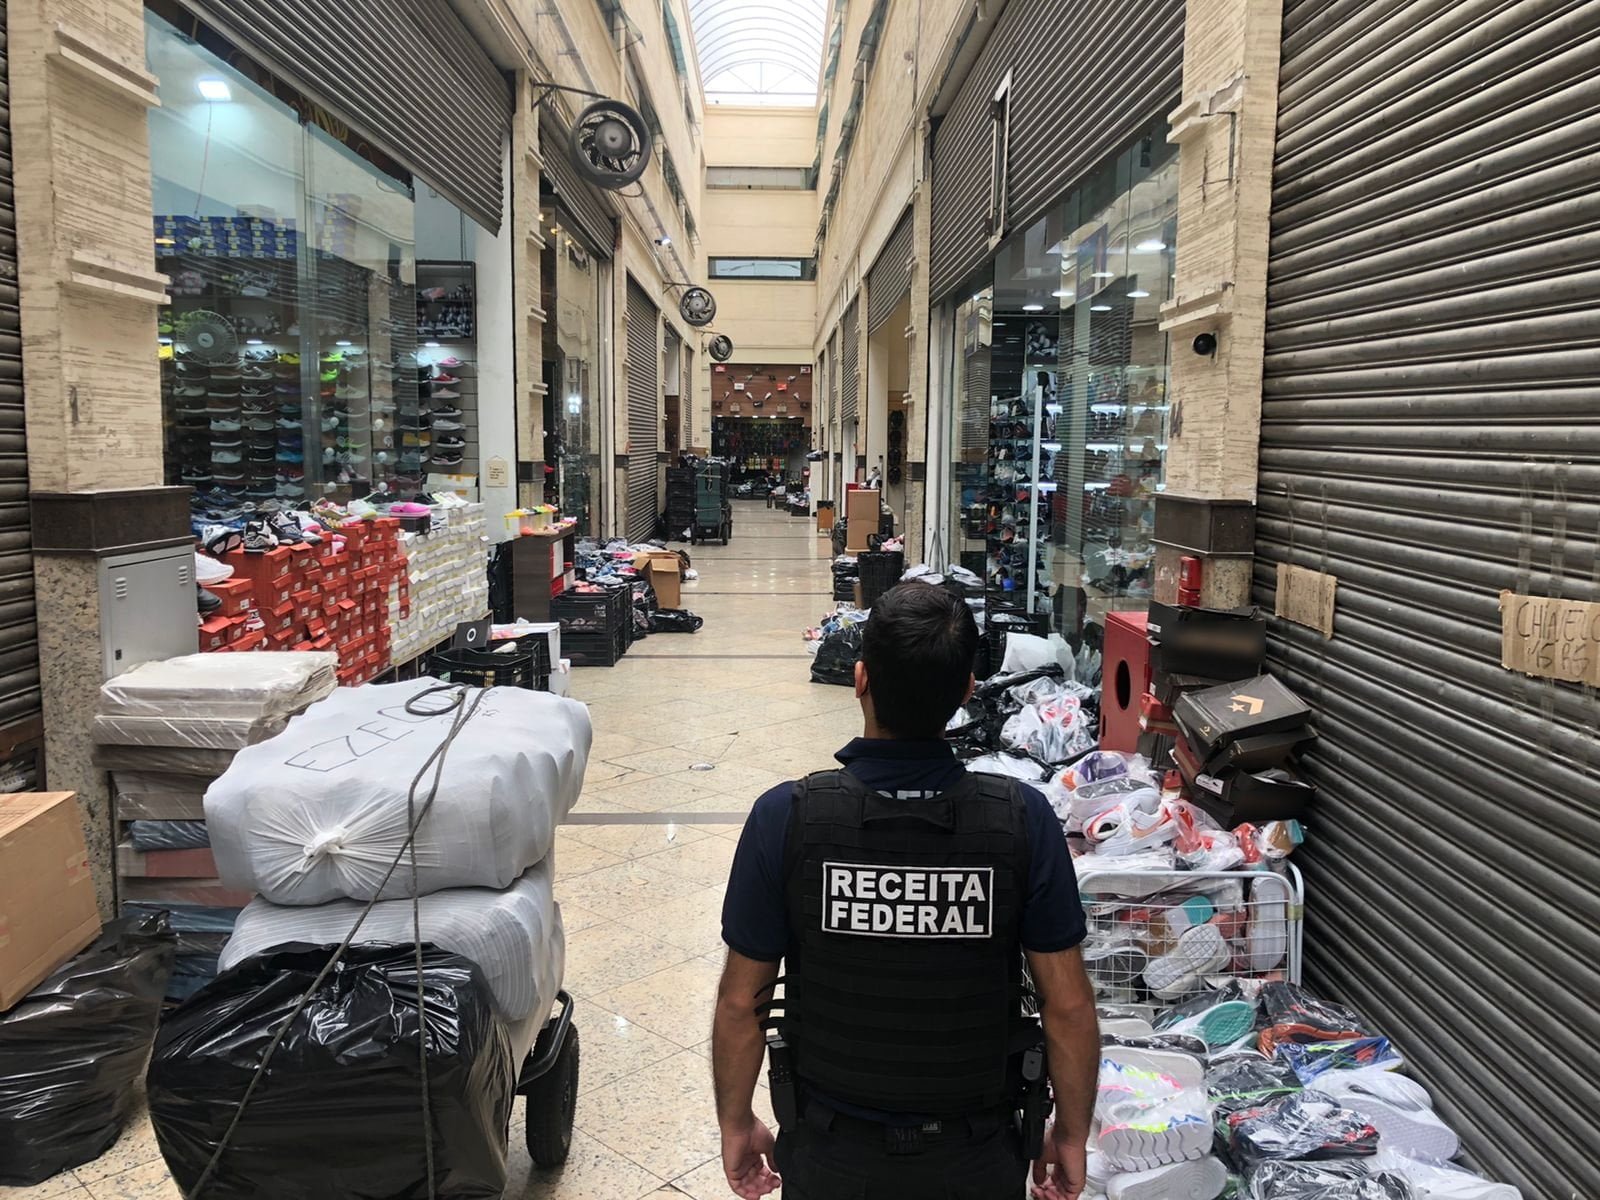 Agente da receita federal, no meio do corredor de um shopping popular, com mercadorias encostadas nas paredes